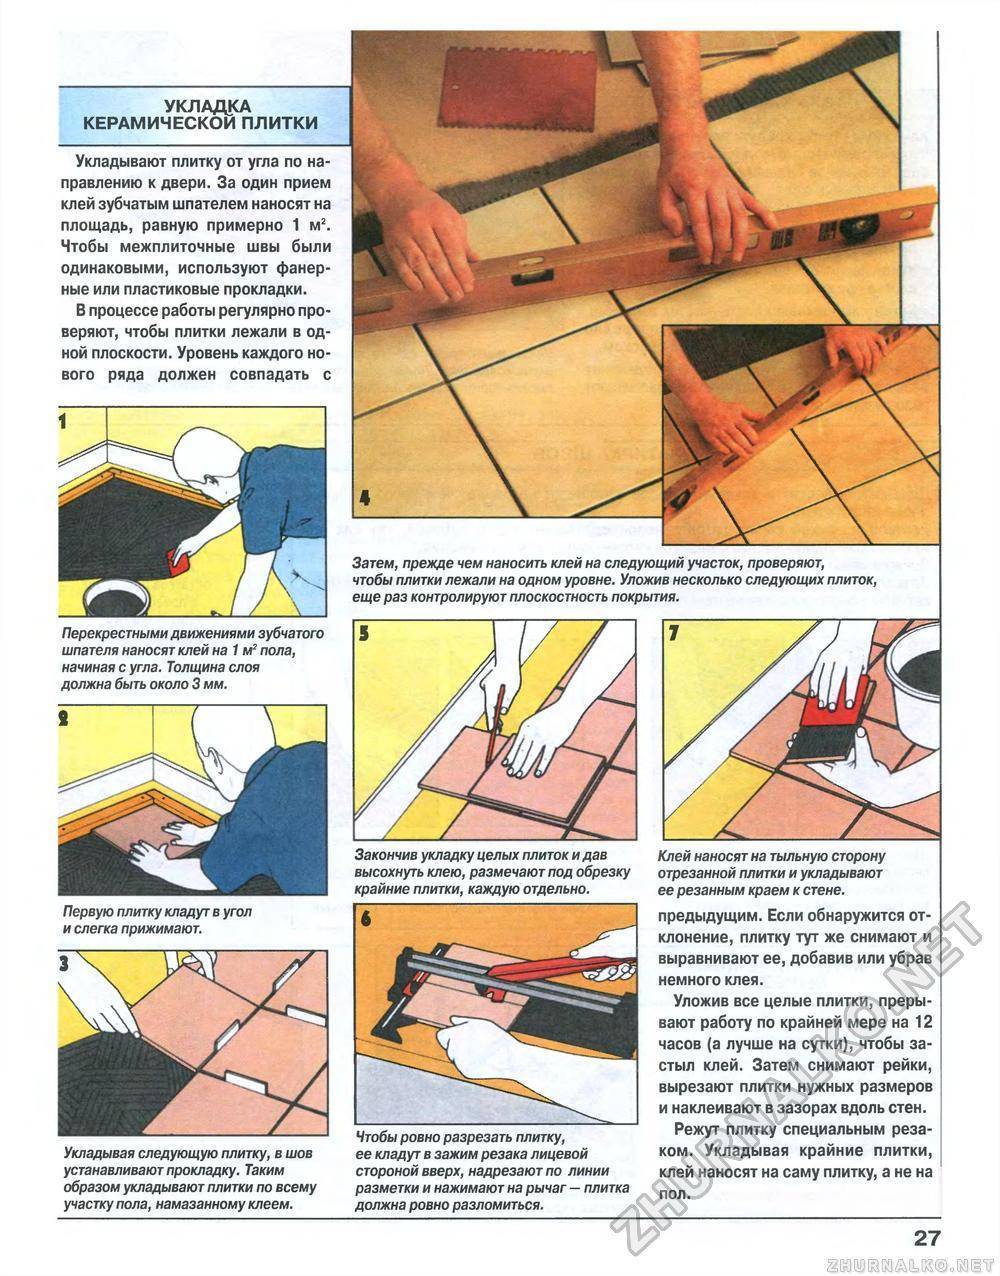 Укладка керамогранита на пол своими руками - иллюстрированная пошаговая инструкция